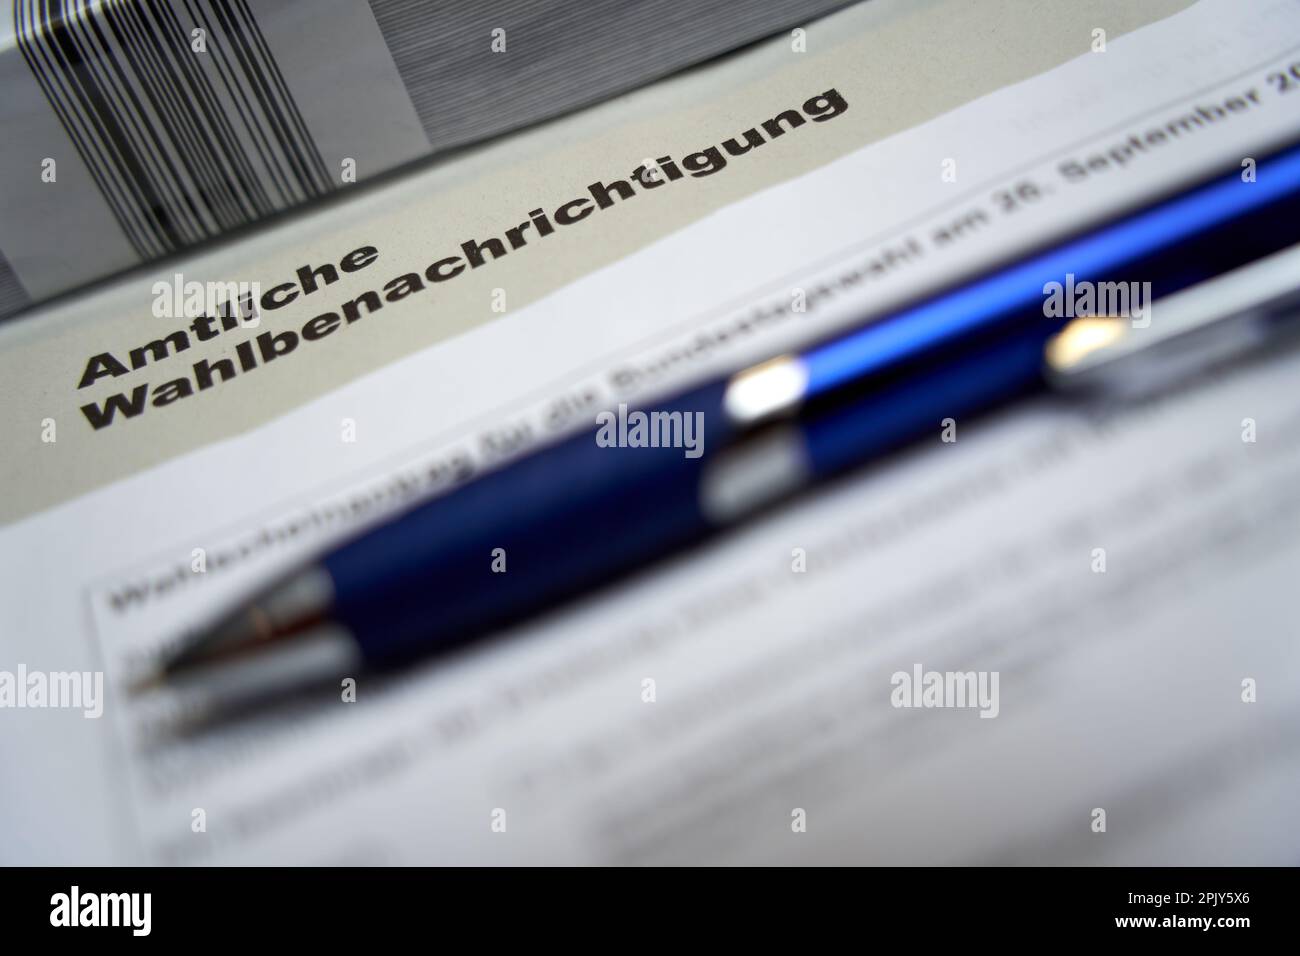 Stuttgart, Allemagne - 28 août 2021: Notification officielle des élections (Wahlbenachrichtigung Bundestag) pour l'élection fédérale en allemagne. Bleu p Banque D'Images